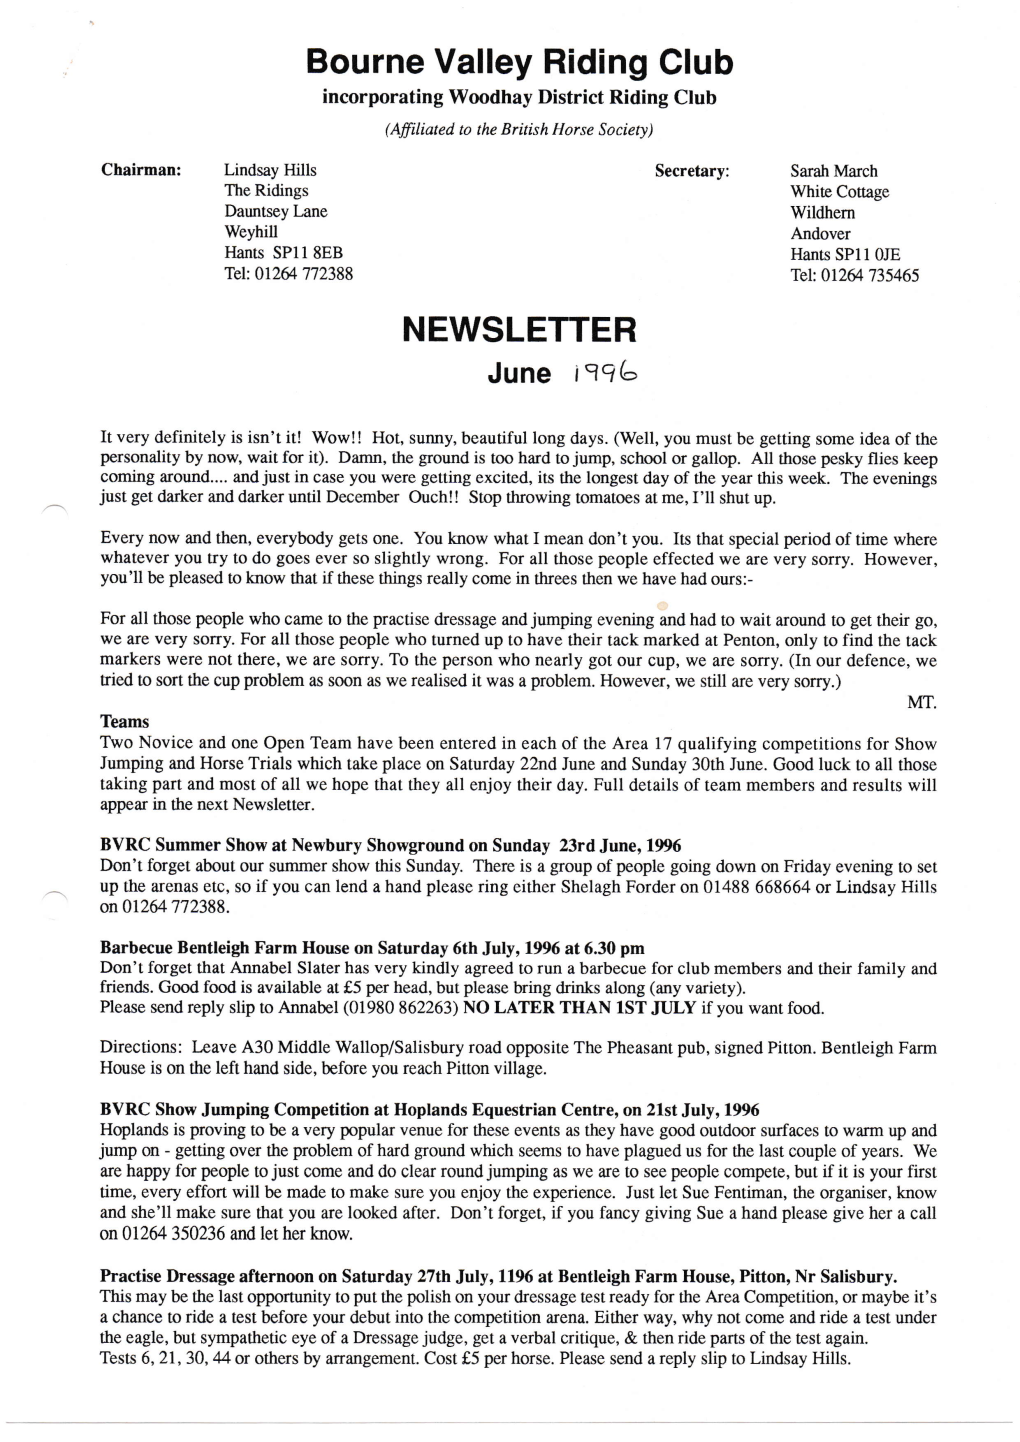 Newsletter June 1996